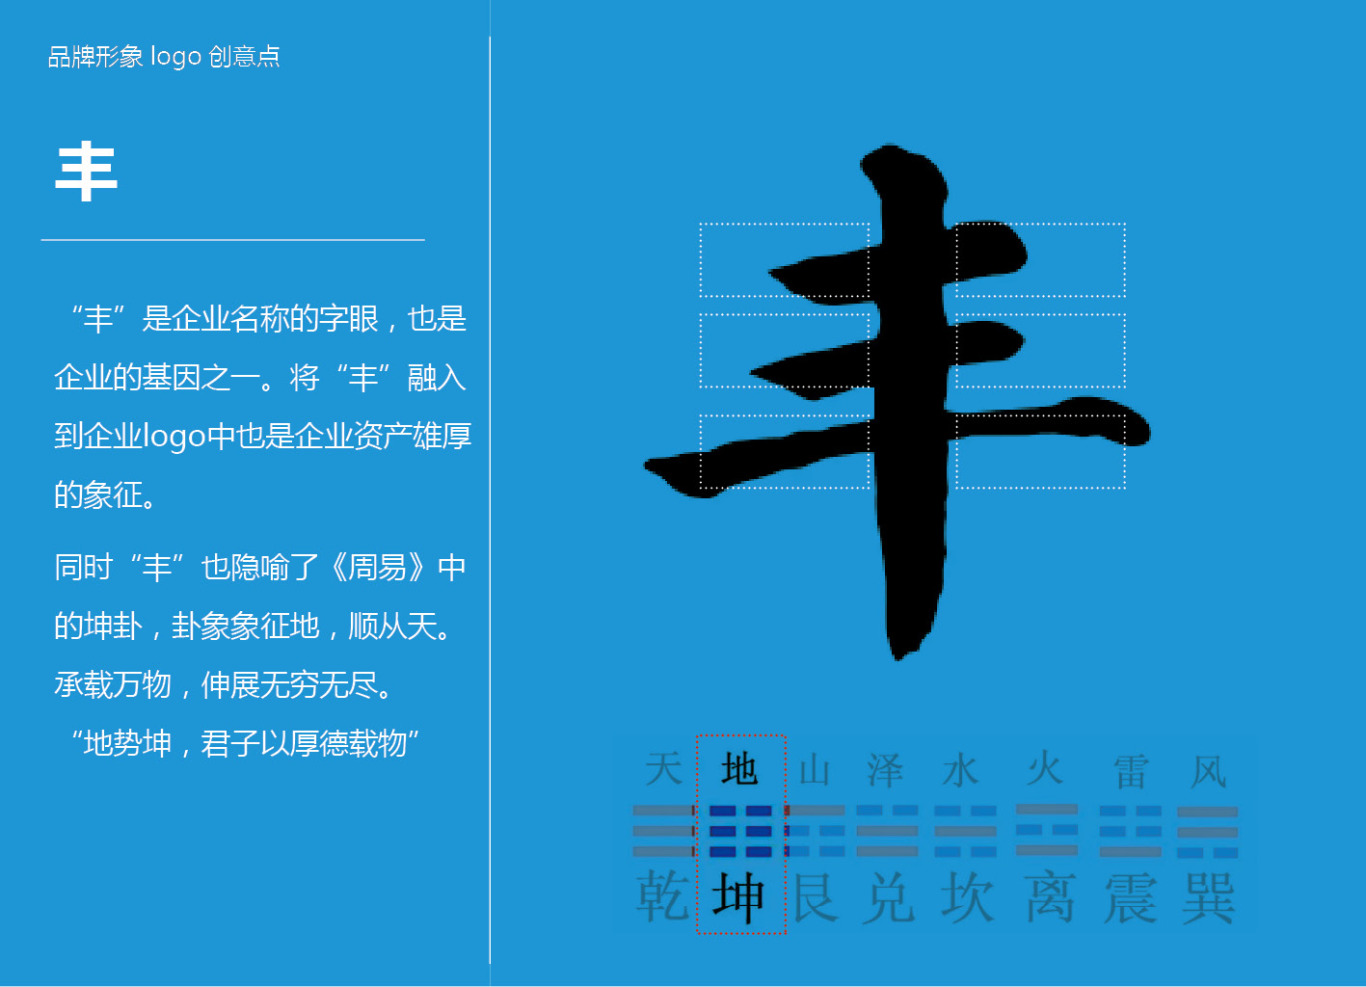 北科永丰资产管理公司品牌形象设计图3